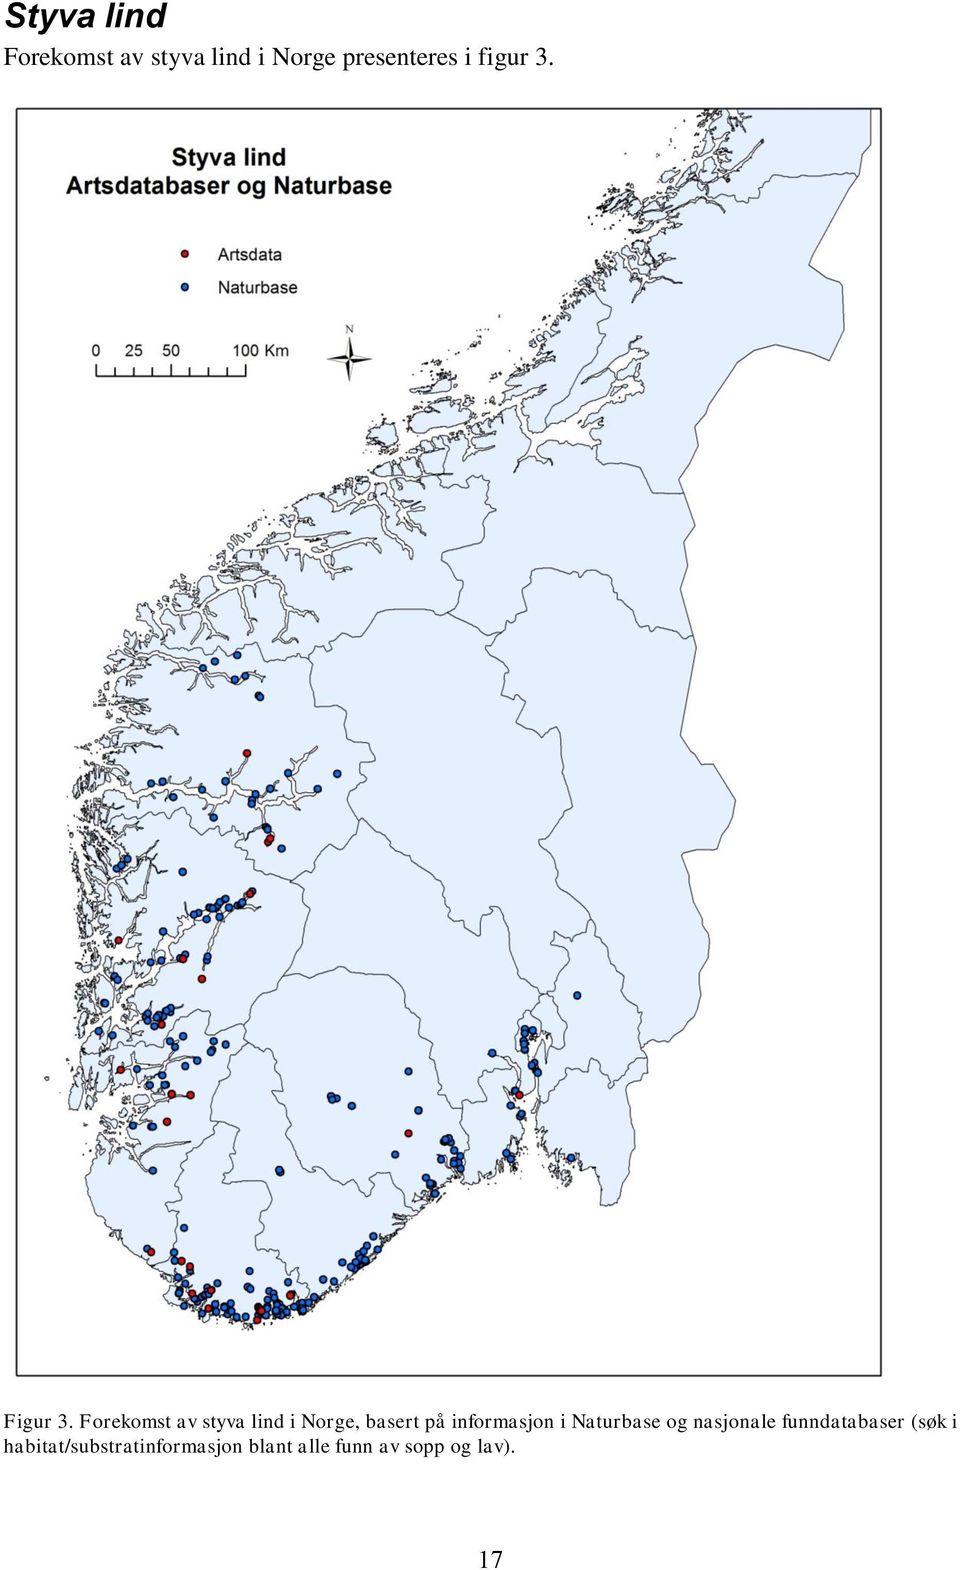 Forekomst av styva lind i Norge, basert på informasjon i